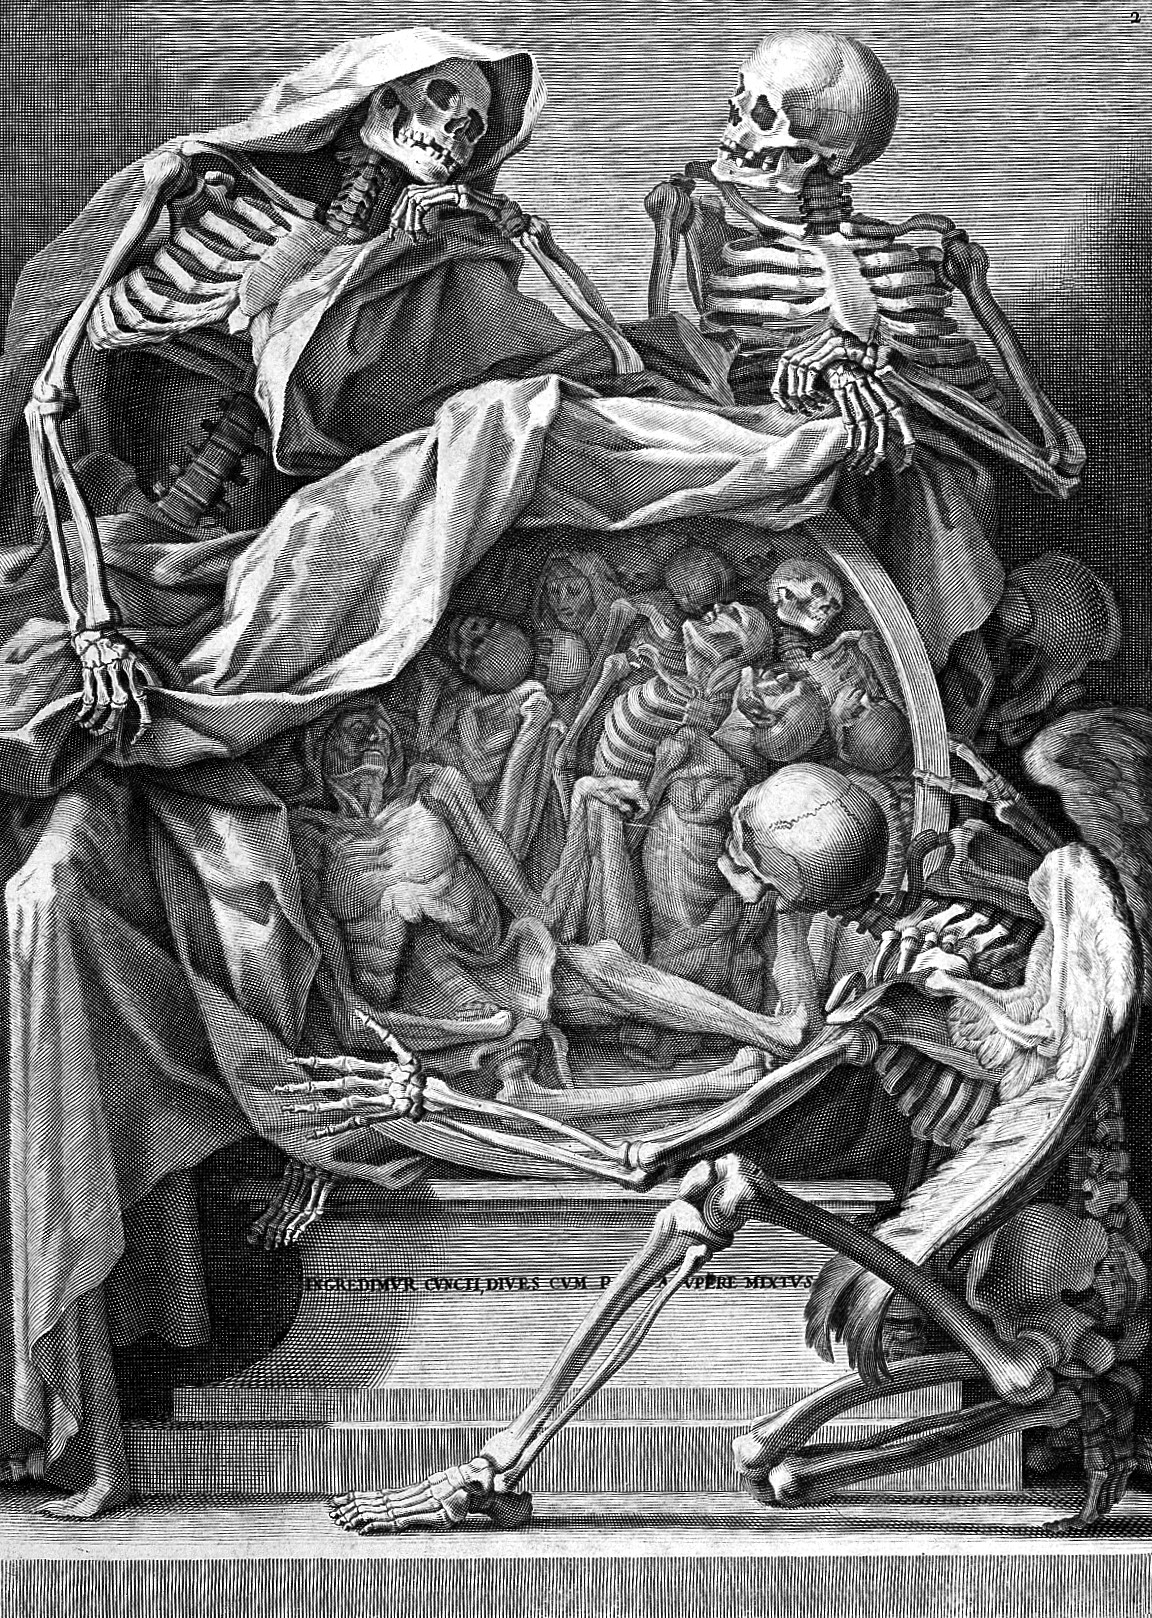 Medieval Drawing of skeletons